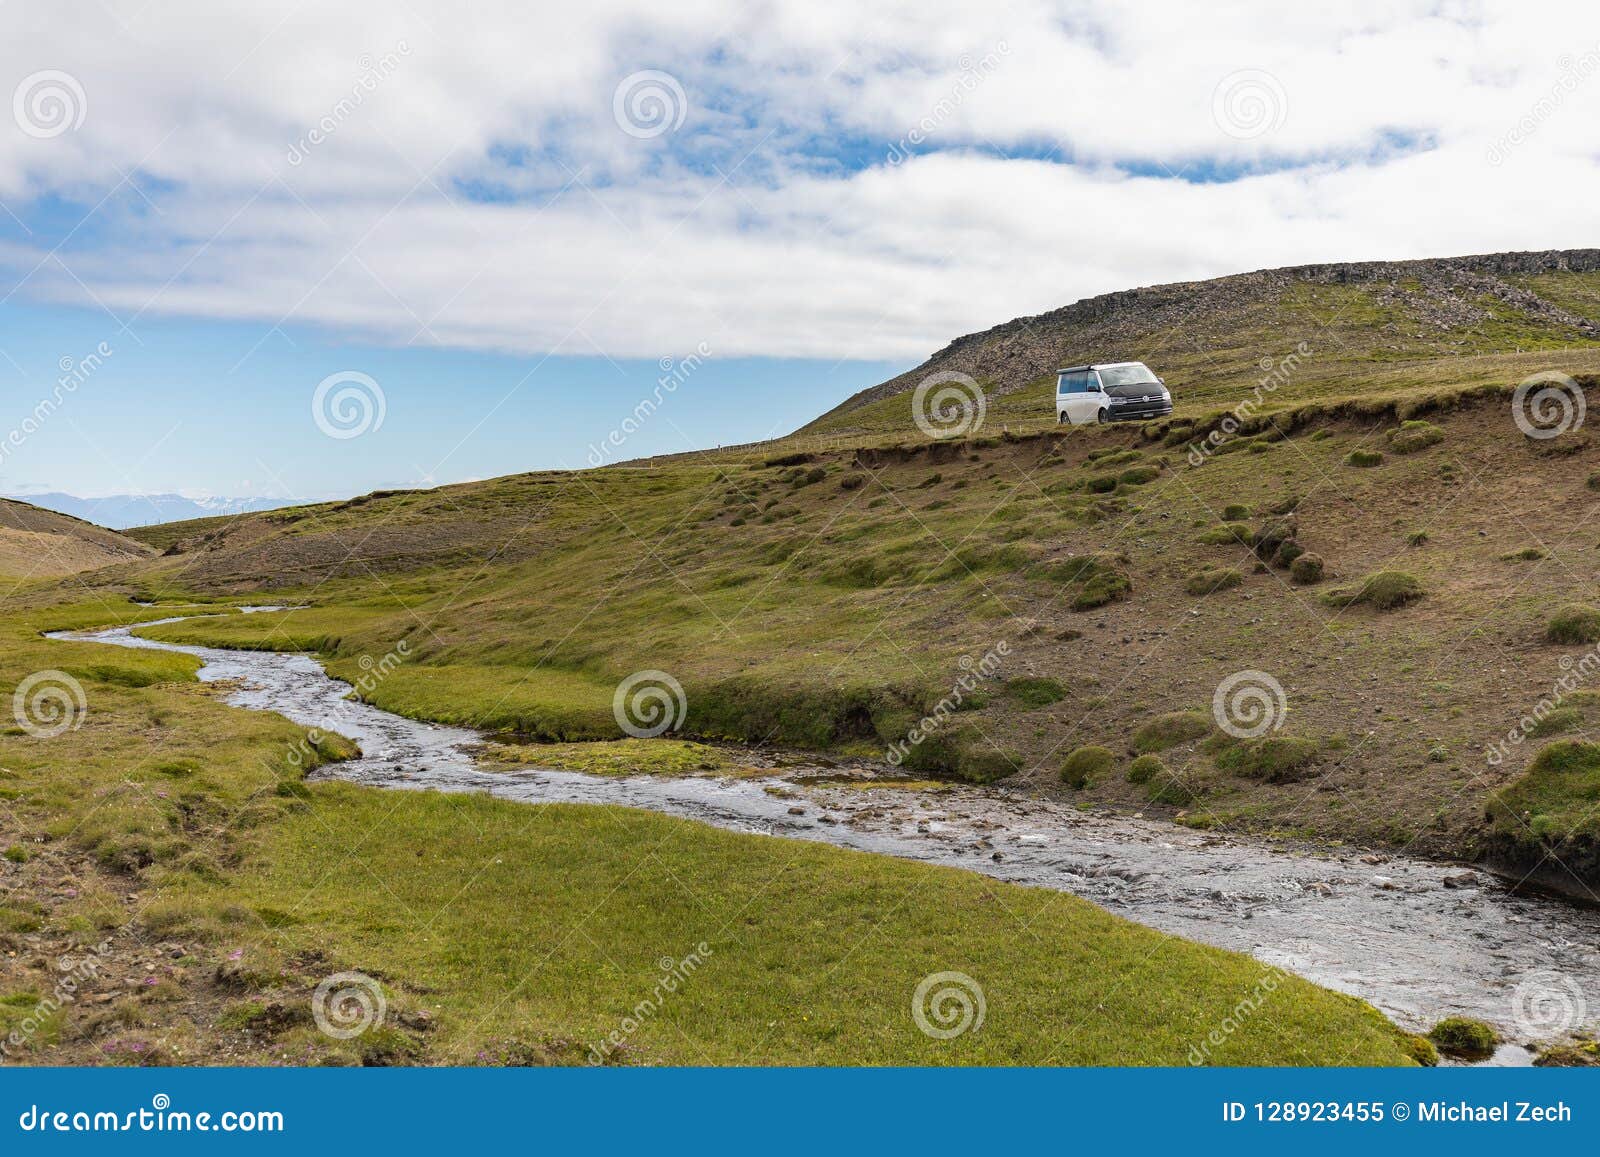 Amazing Scenic Mountain Landscape Shot on Iceland Stock Image - Image ...